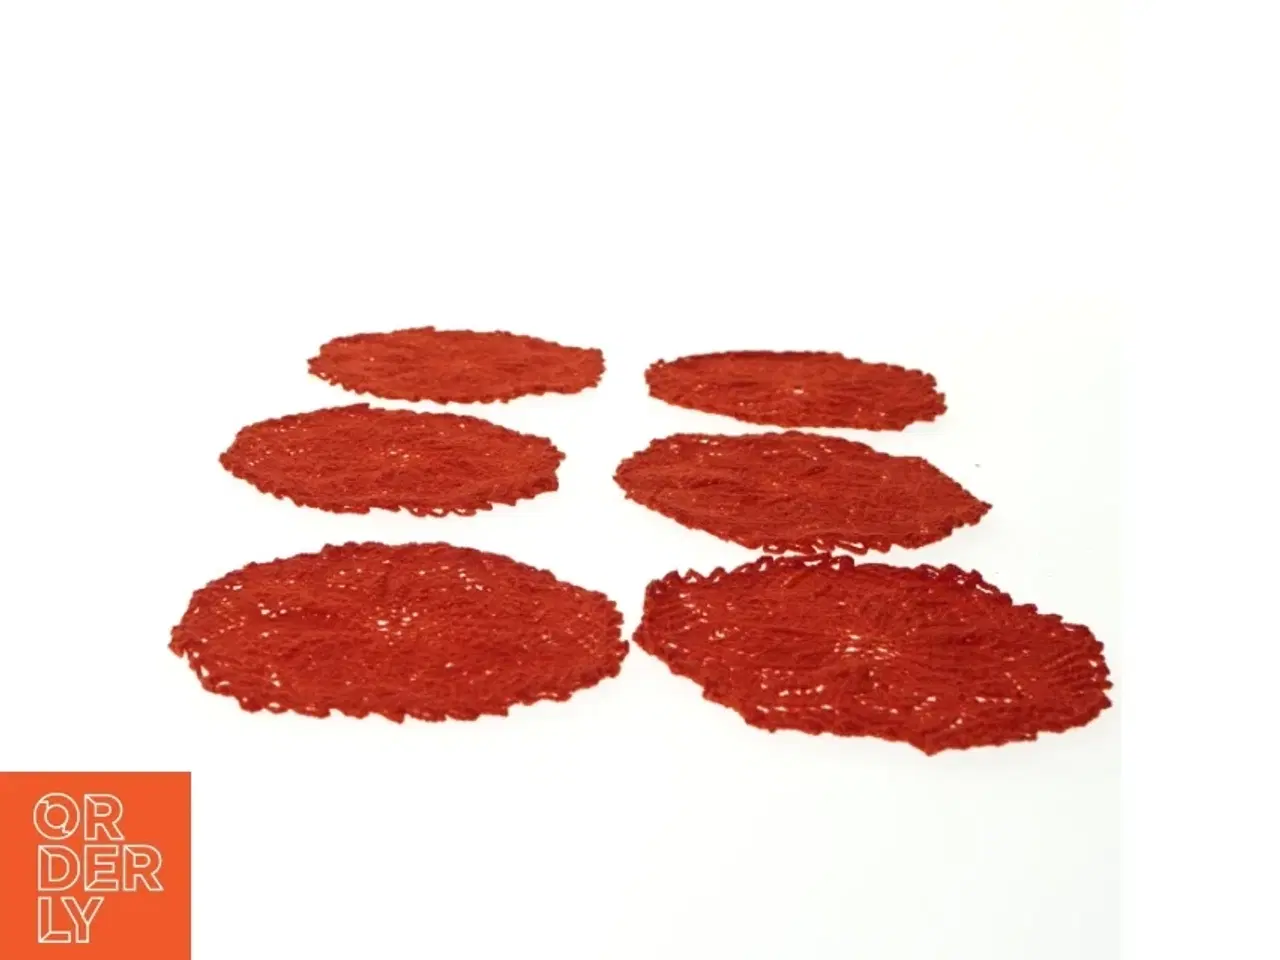 Billede 2 - Hæklede røde flakonner (14 cm i diameter)